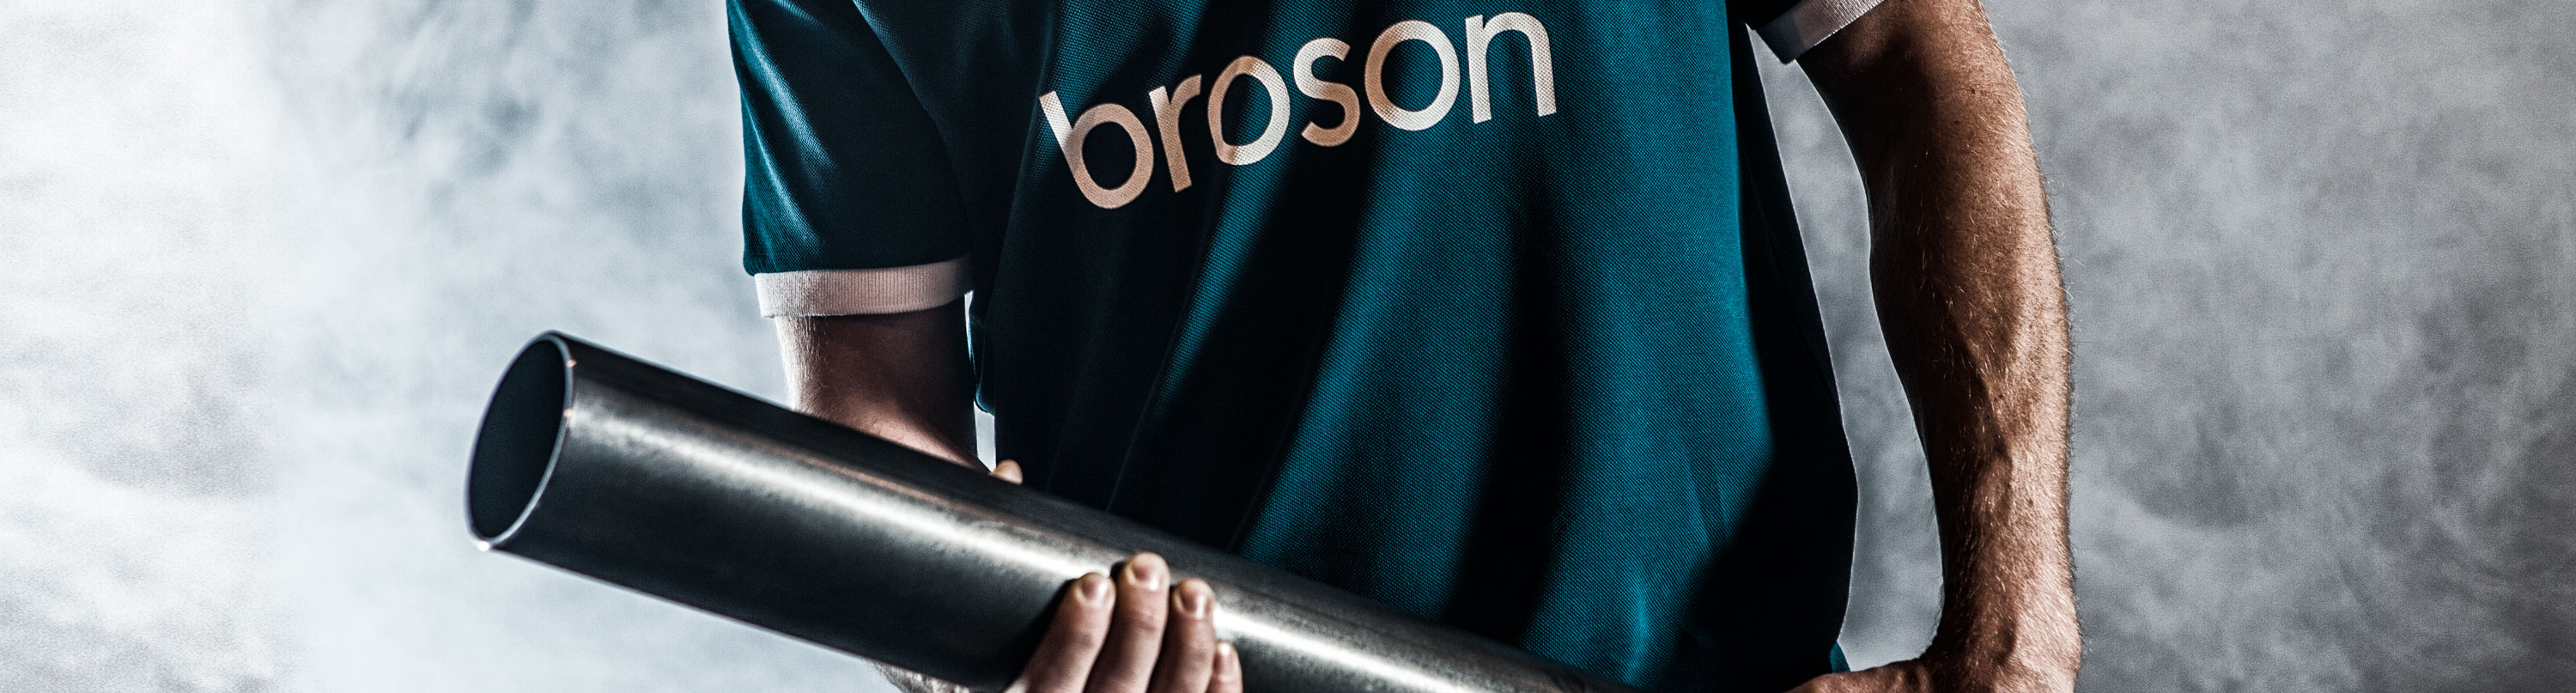 Broson Steel – Resultat av våra produkter och tjänster